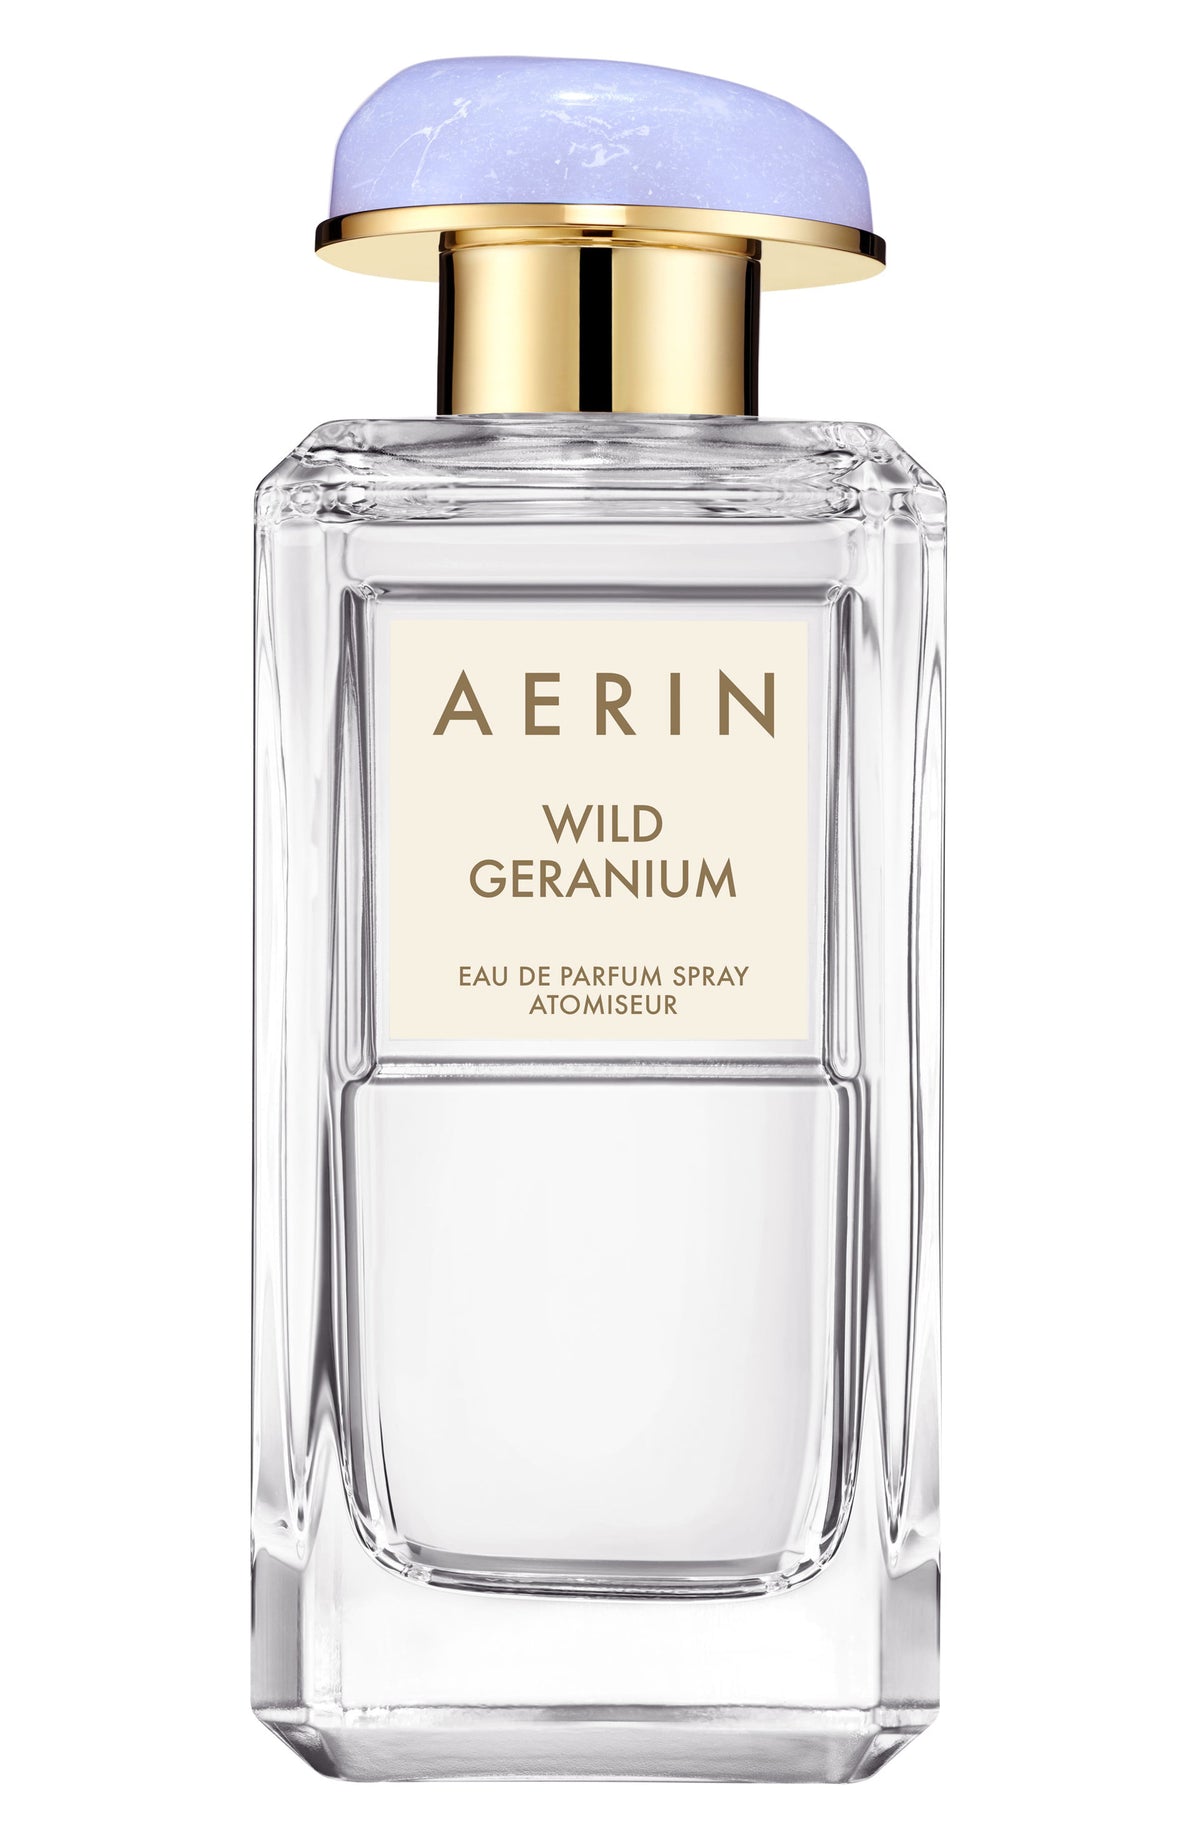 AERIN Wild Geranium Eau de Parfum Spray 3.4 oz